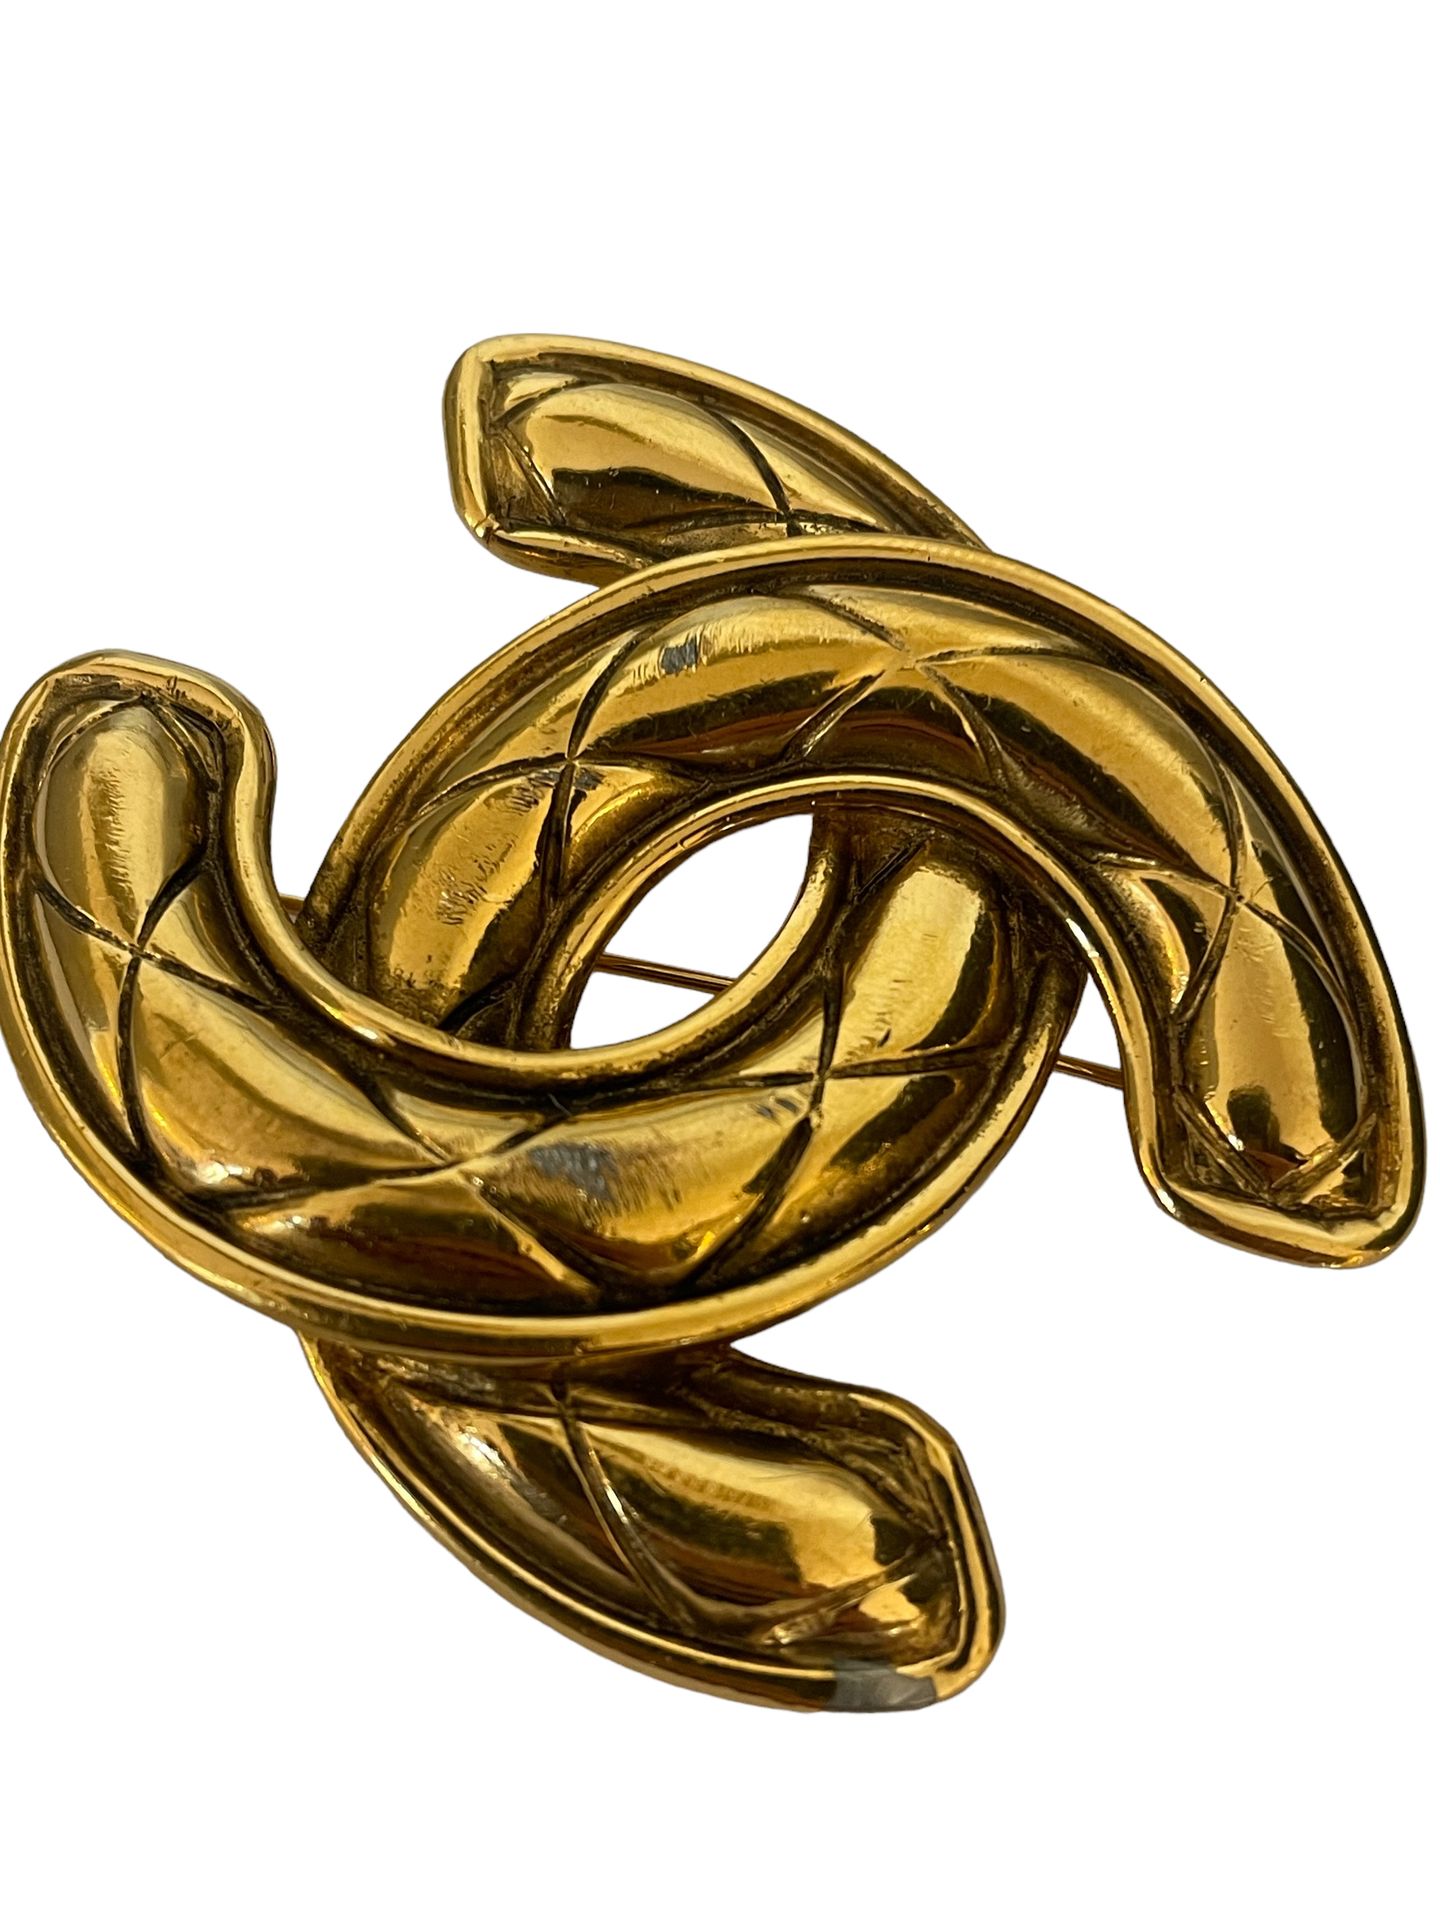 Null CHANEL
Gran broche de metal dorado con el logotipo de la empresa.
5 x 6 cm
&hellip;